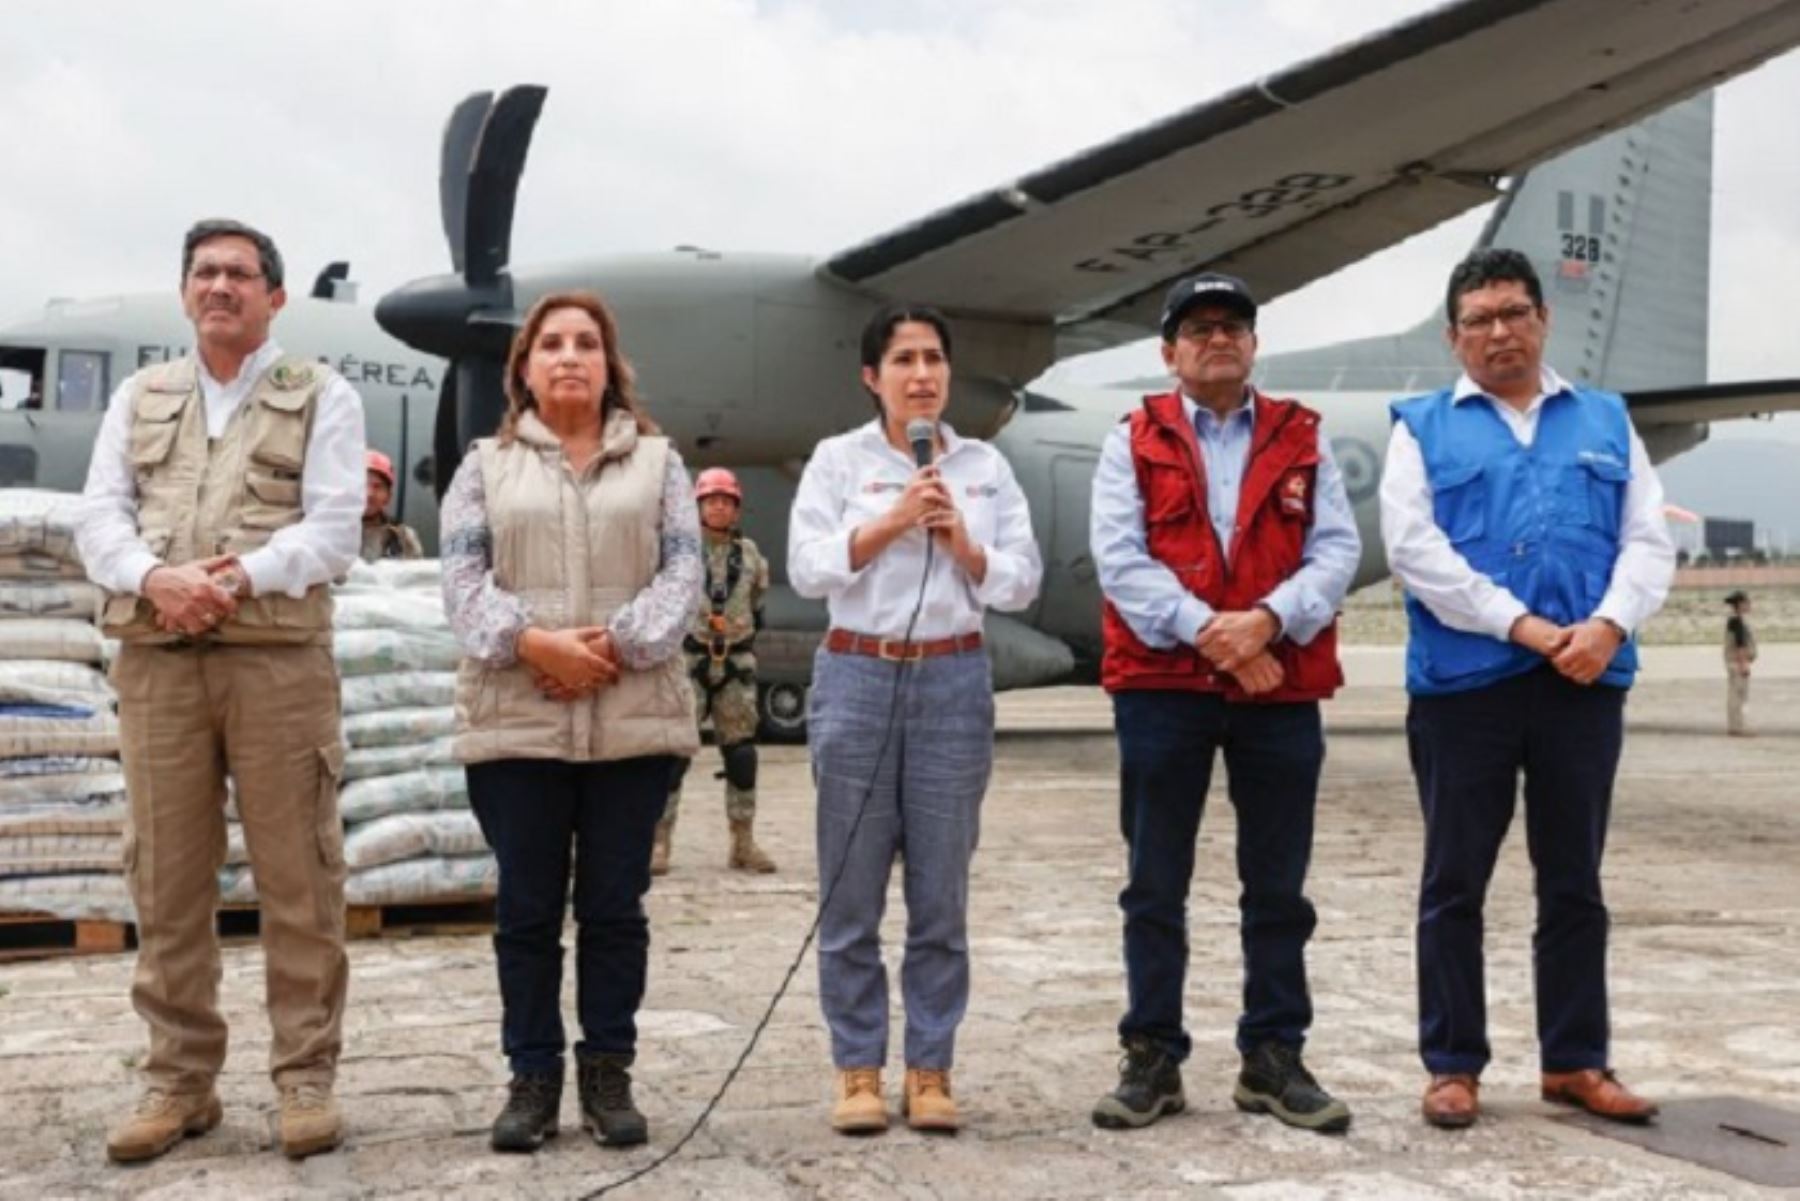 Huaico en Arequipa: MTC trabaja con Gore y otros sectores para atender emergencia